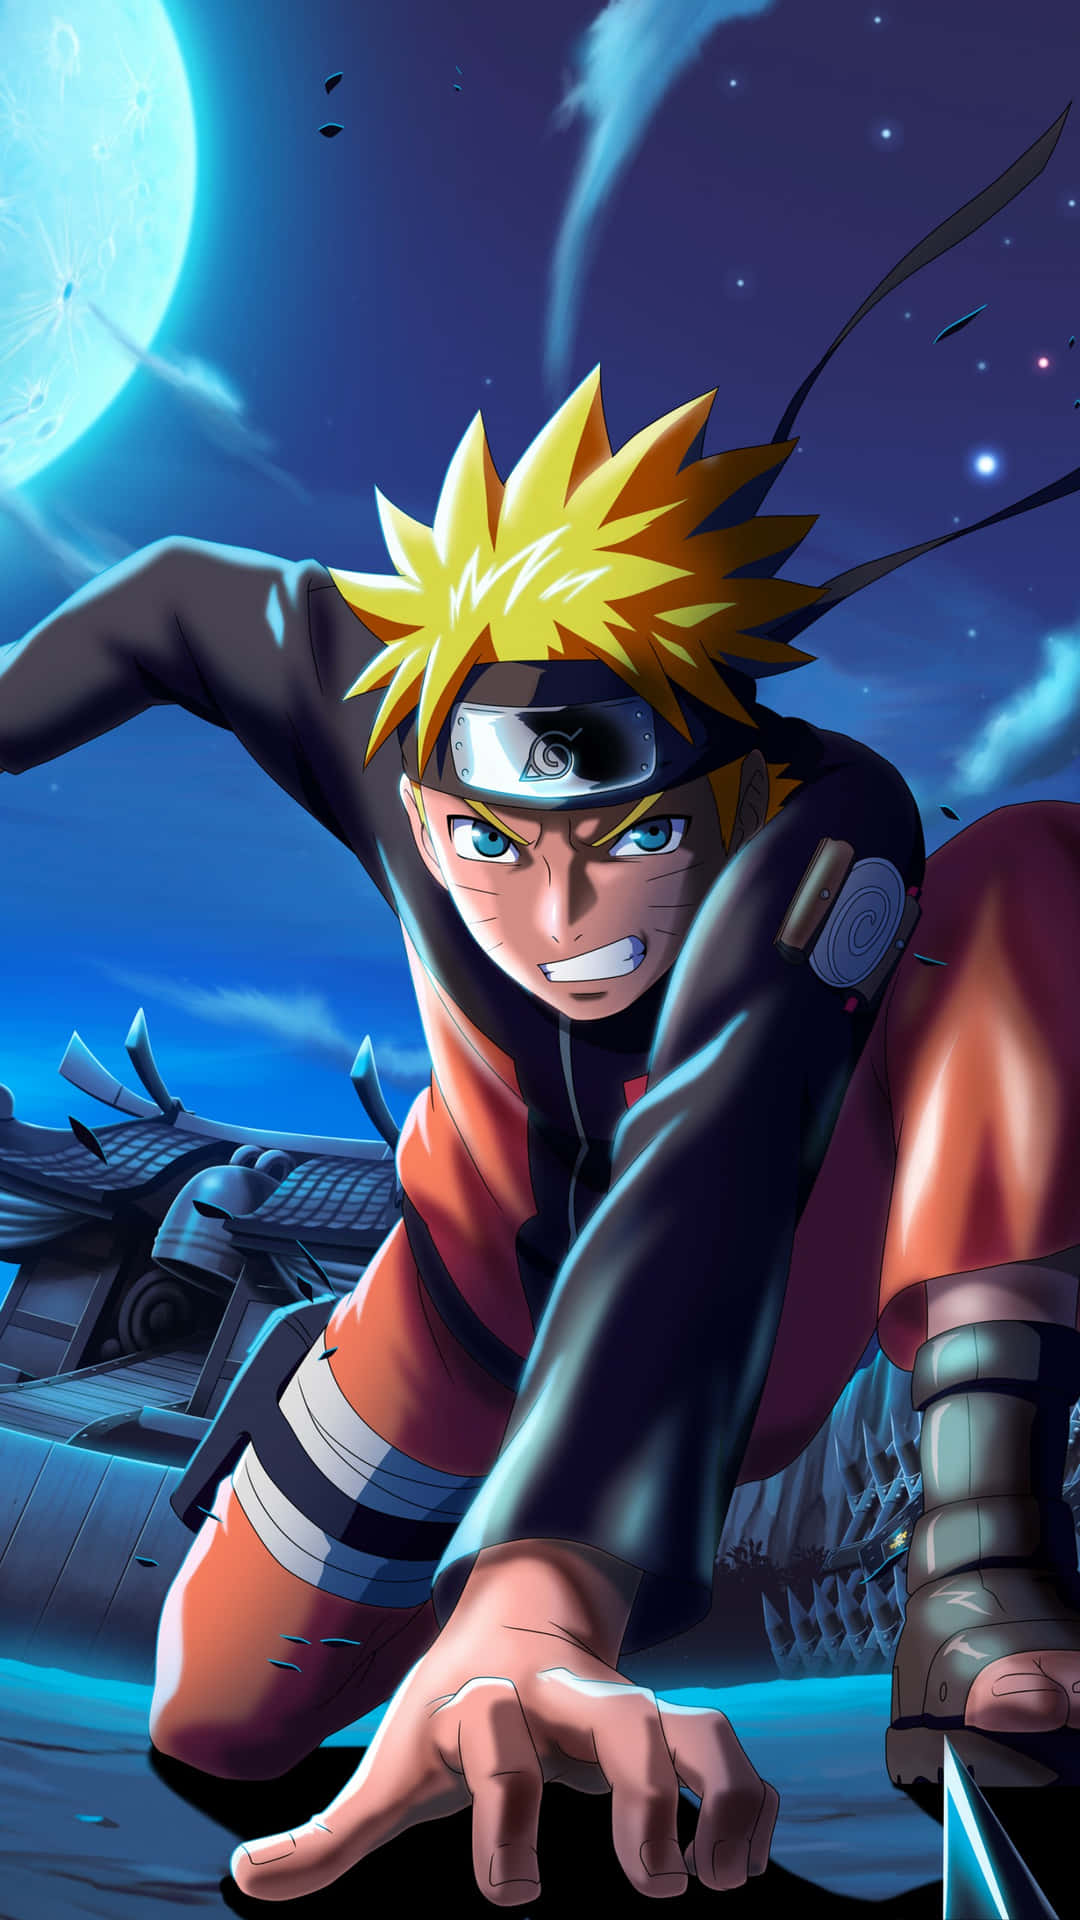 Naruto Uzumaki 4k Wallpaper: Cùng ngắm nhìn hình nền 4K độ nét cao về Naruto, người hùng của chúng ta. Không chỉ nói đến sức mạnh của anh, mà hình ảnh còn tái hiện đầy đủ tâm hồn và tình cảm của Naruto với đồng đội, gia đình và chính bản thân mình.